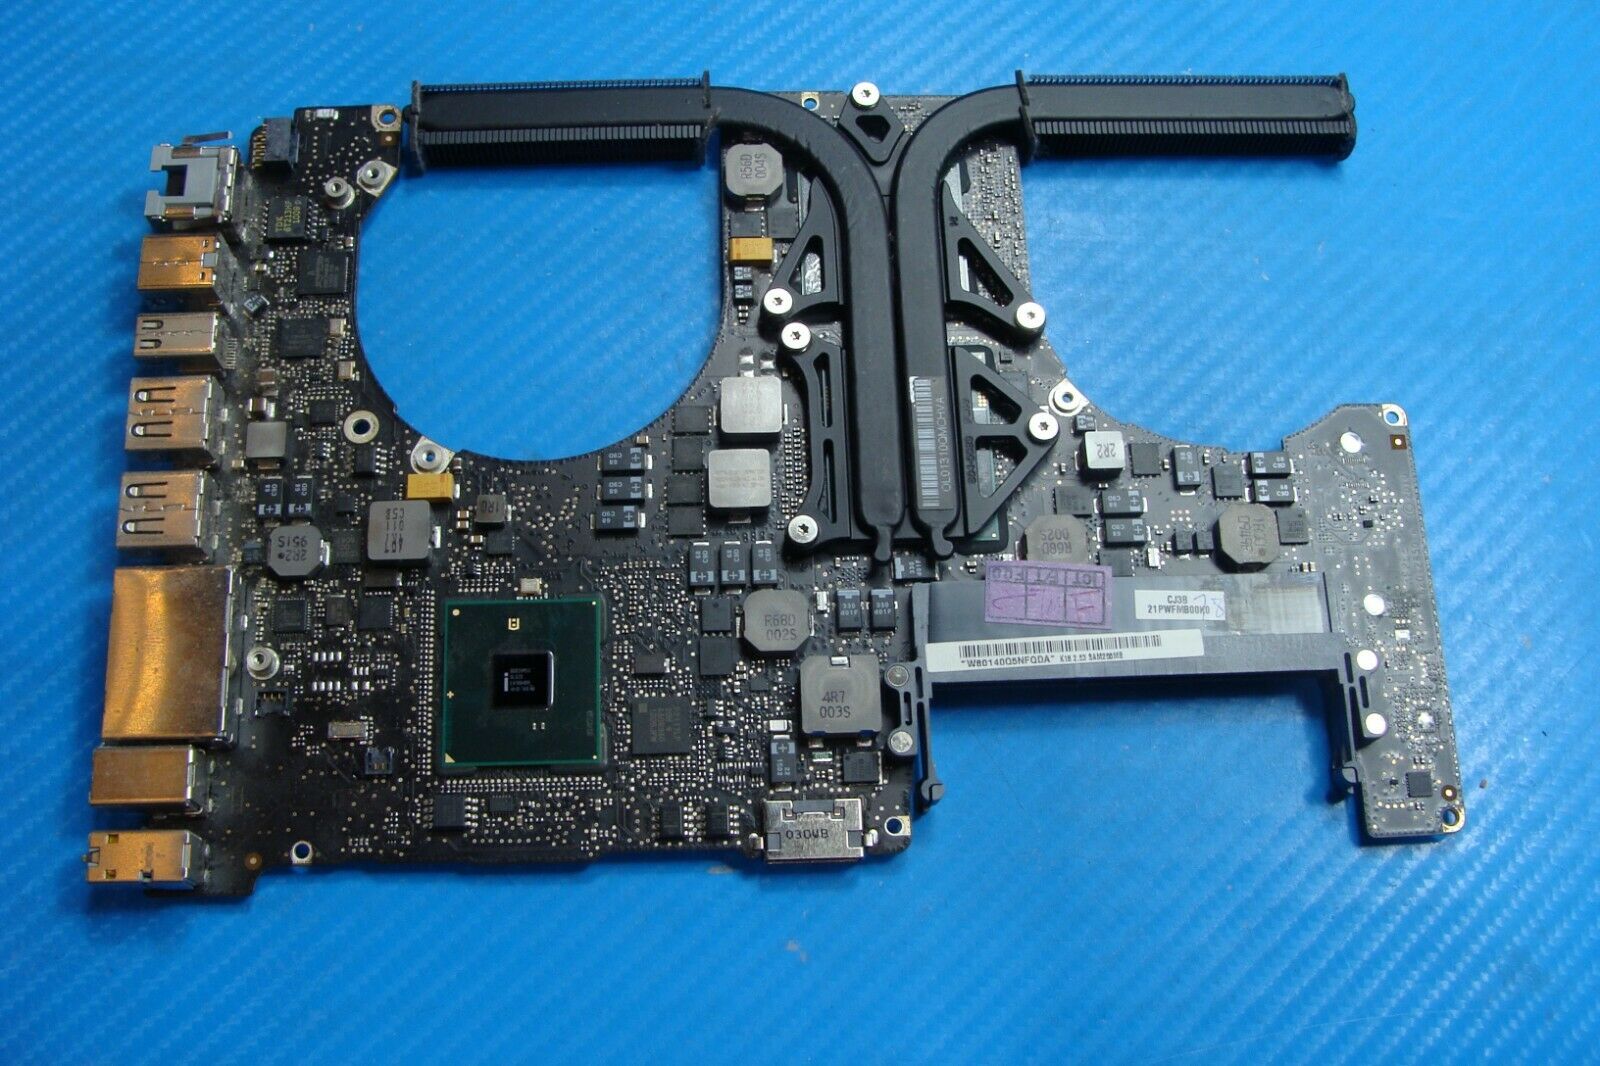 MacBook Pro 15 A1286 2010 MC372LL/A i5-540M 2.53GHz Logic Board 820-2850-a AS IS 